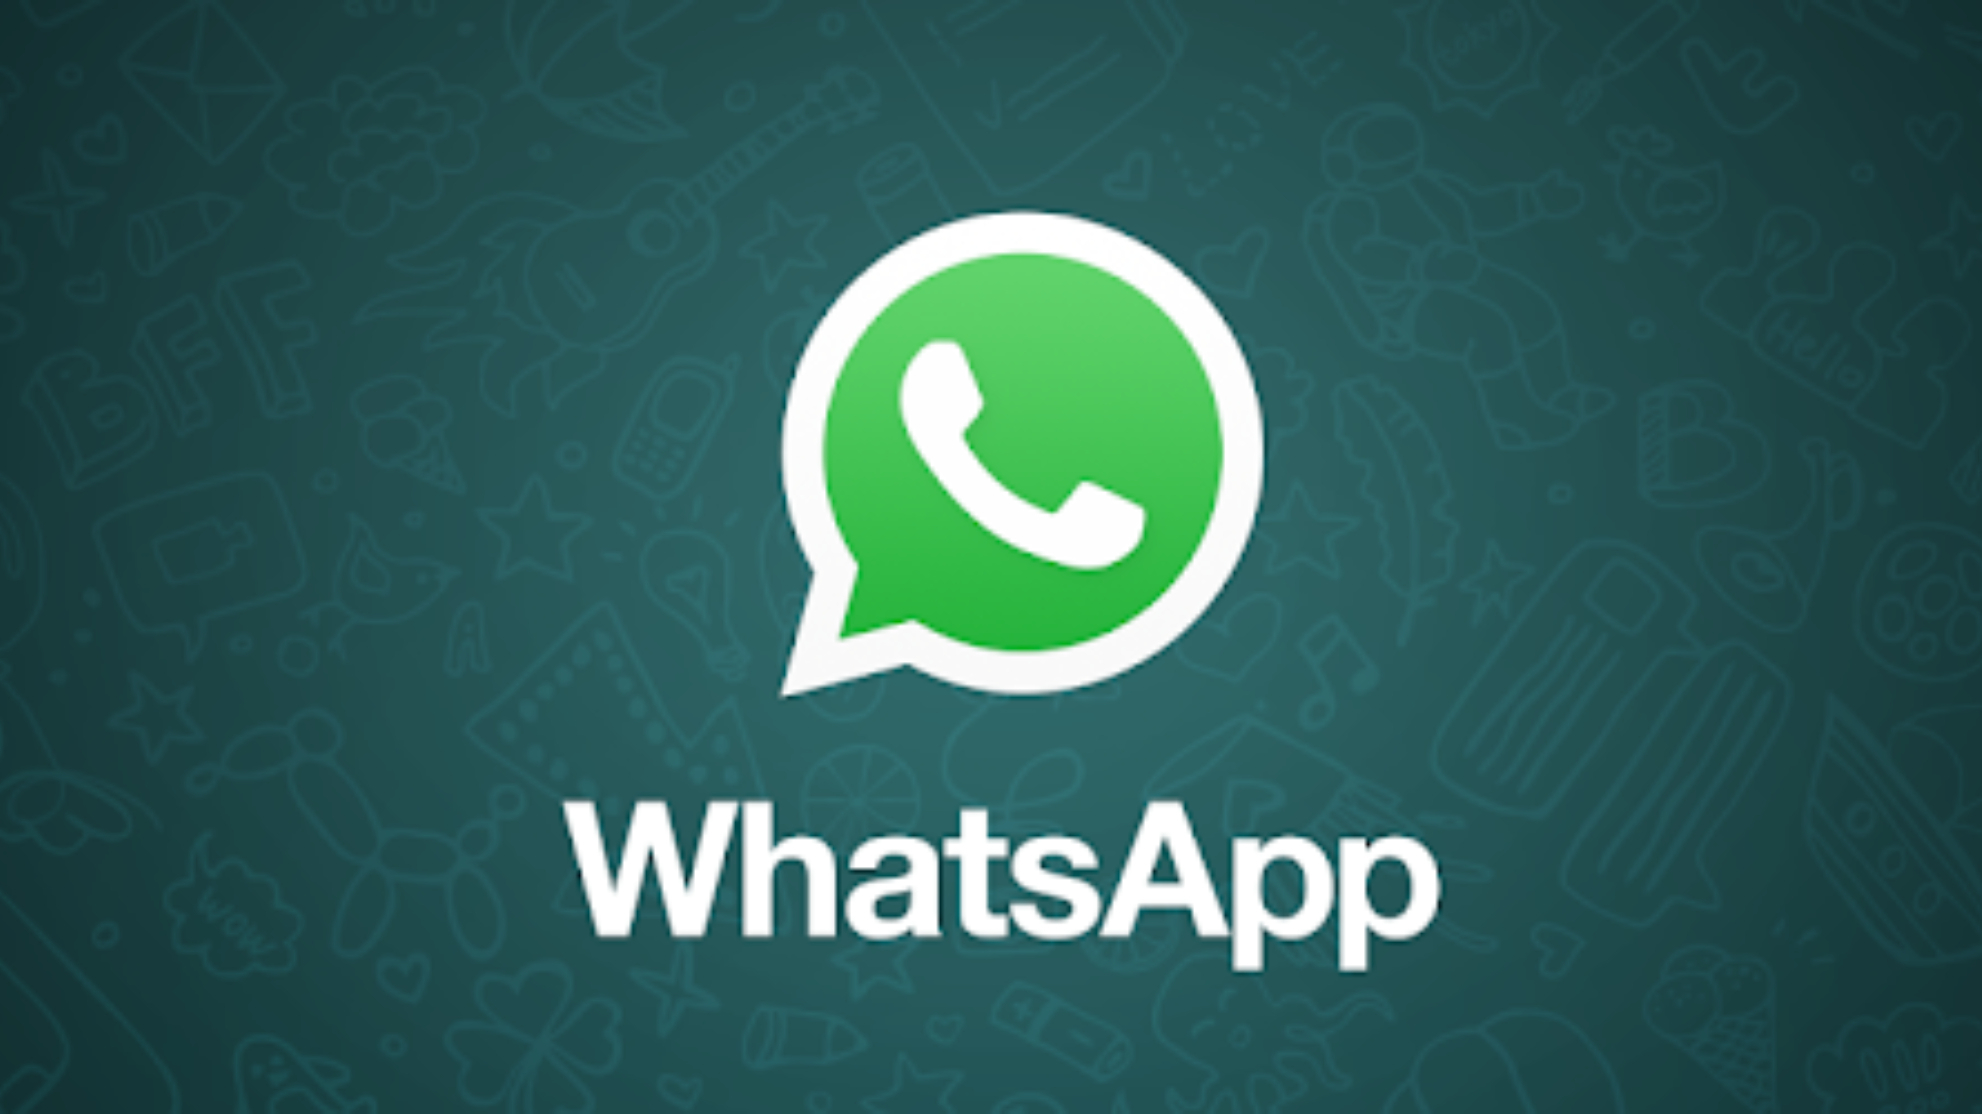 WhatsApp Plus 2022: W ten sposób możesz dowiedzieć się, czy masz oryginalny pakiet APK na swoim telefonie komórkowym